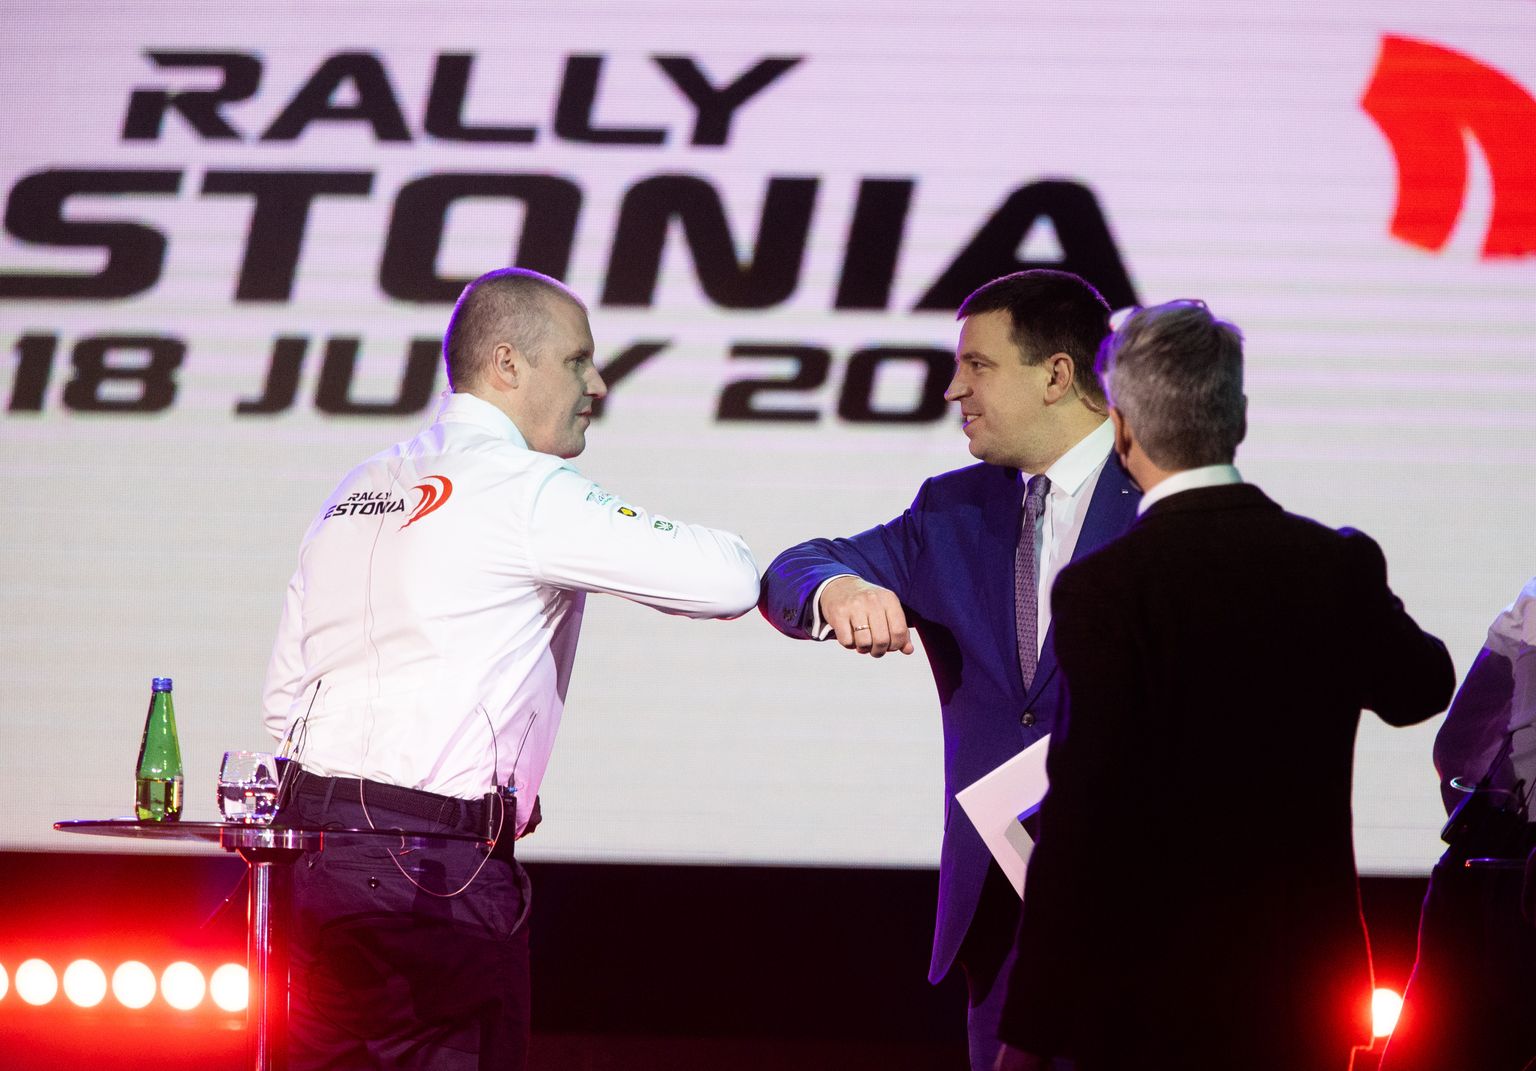 Rally Estonia direktor Urmo Aava (vasakul) tänab peaminister Jüri Ratast, kes leidis tormilisest päevast hoolimata aega pressikoneverntsile tulla. FOTO: Tairo Lutter